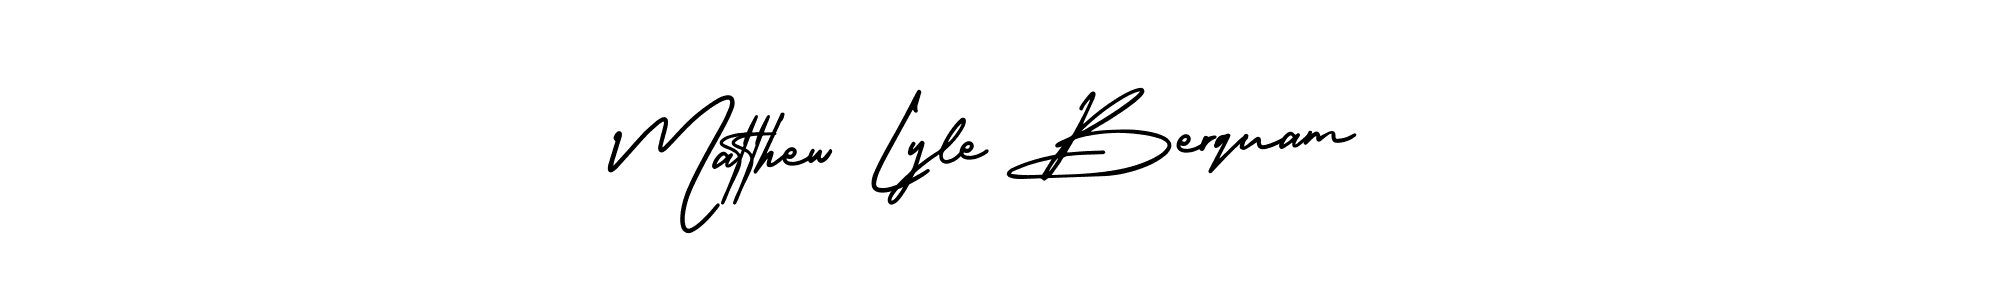 Best and Professional Signature Style for Matthew Lyle Berquam. AmerikaSignatureDemo-Regular Best Signature Style Collection. Matthew Lyle Berquam signature style 3 images and pictures png